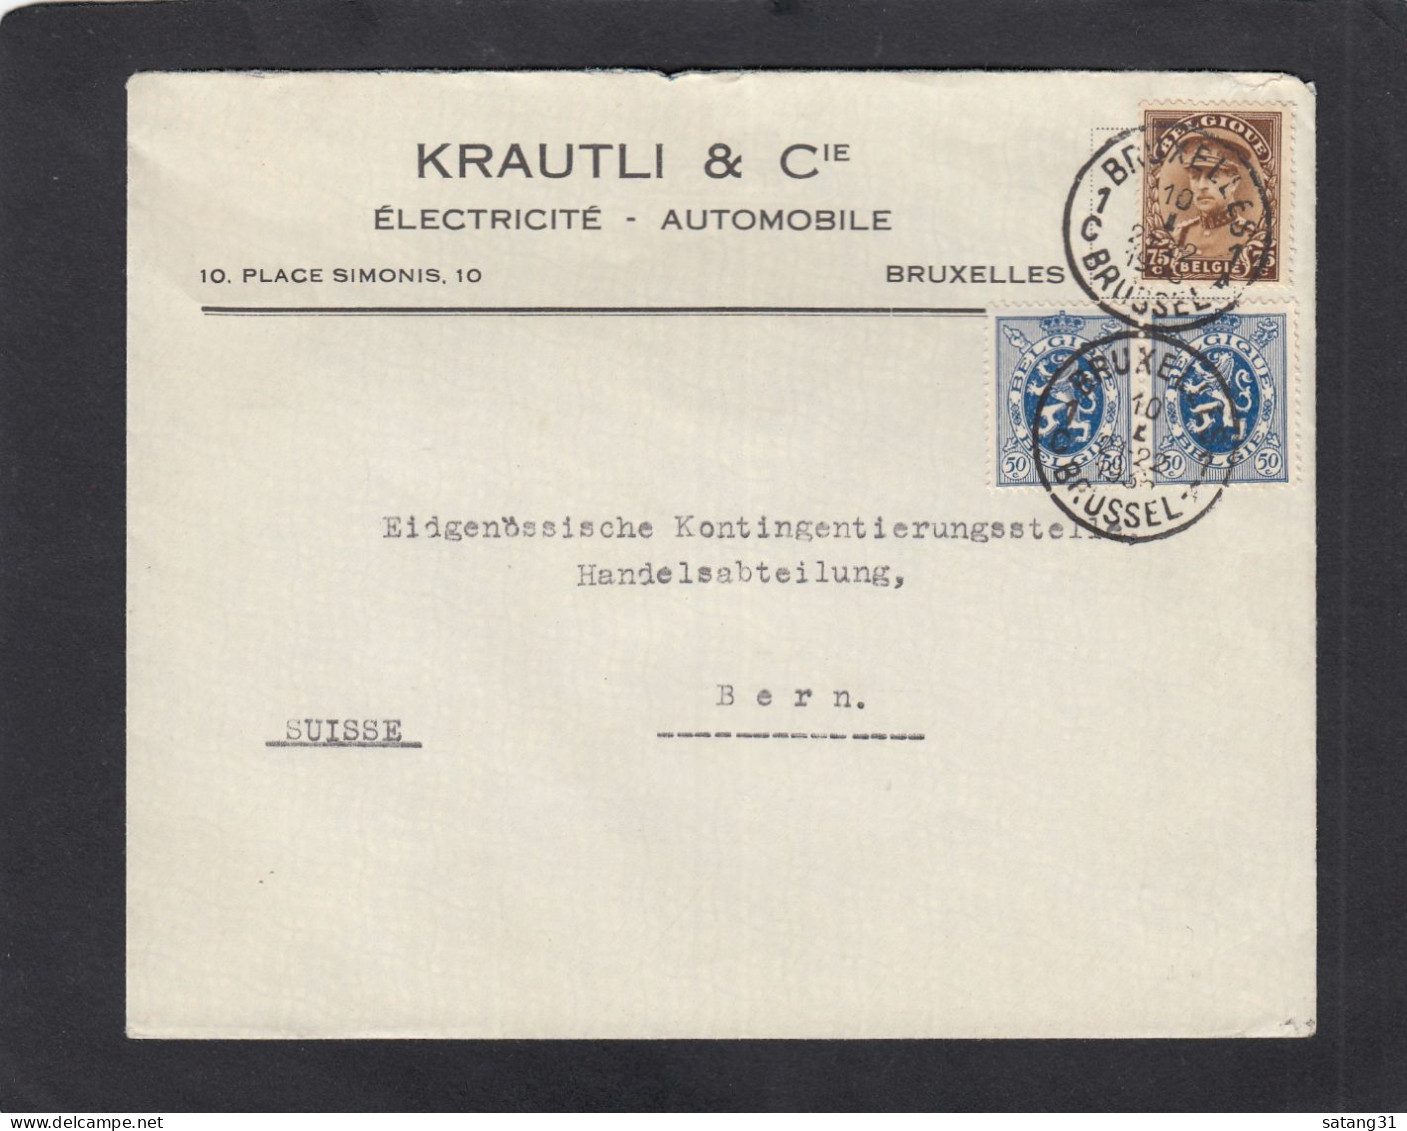 KRATLI & CIE.,ELECTRICITE - AUTOMOBILE, BRUXELLES.LETTRE POUR BERN,1935. - Lettres & Documents